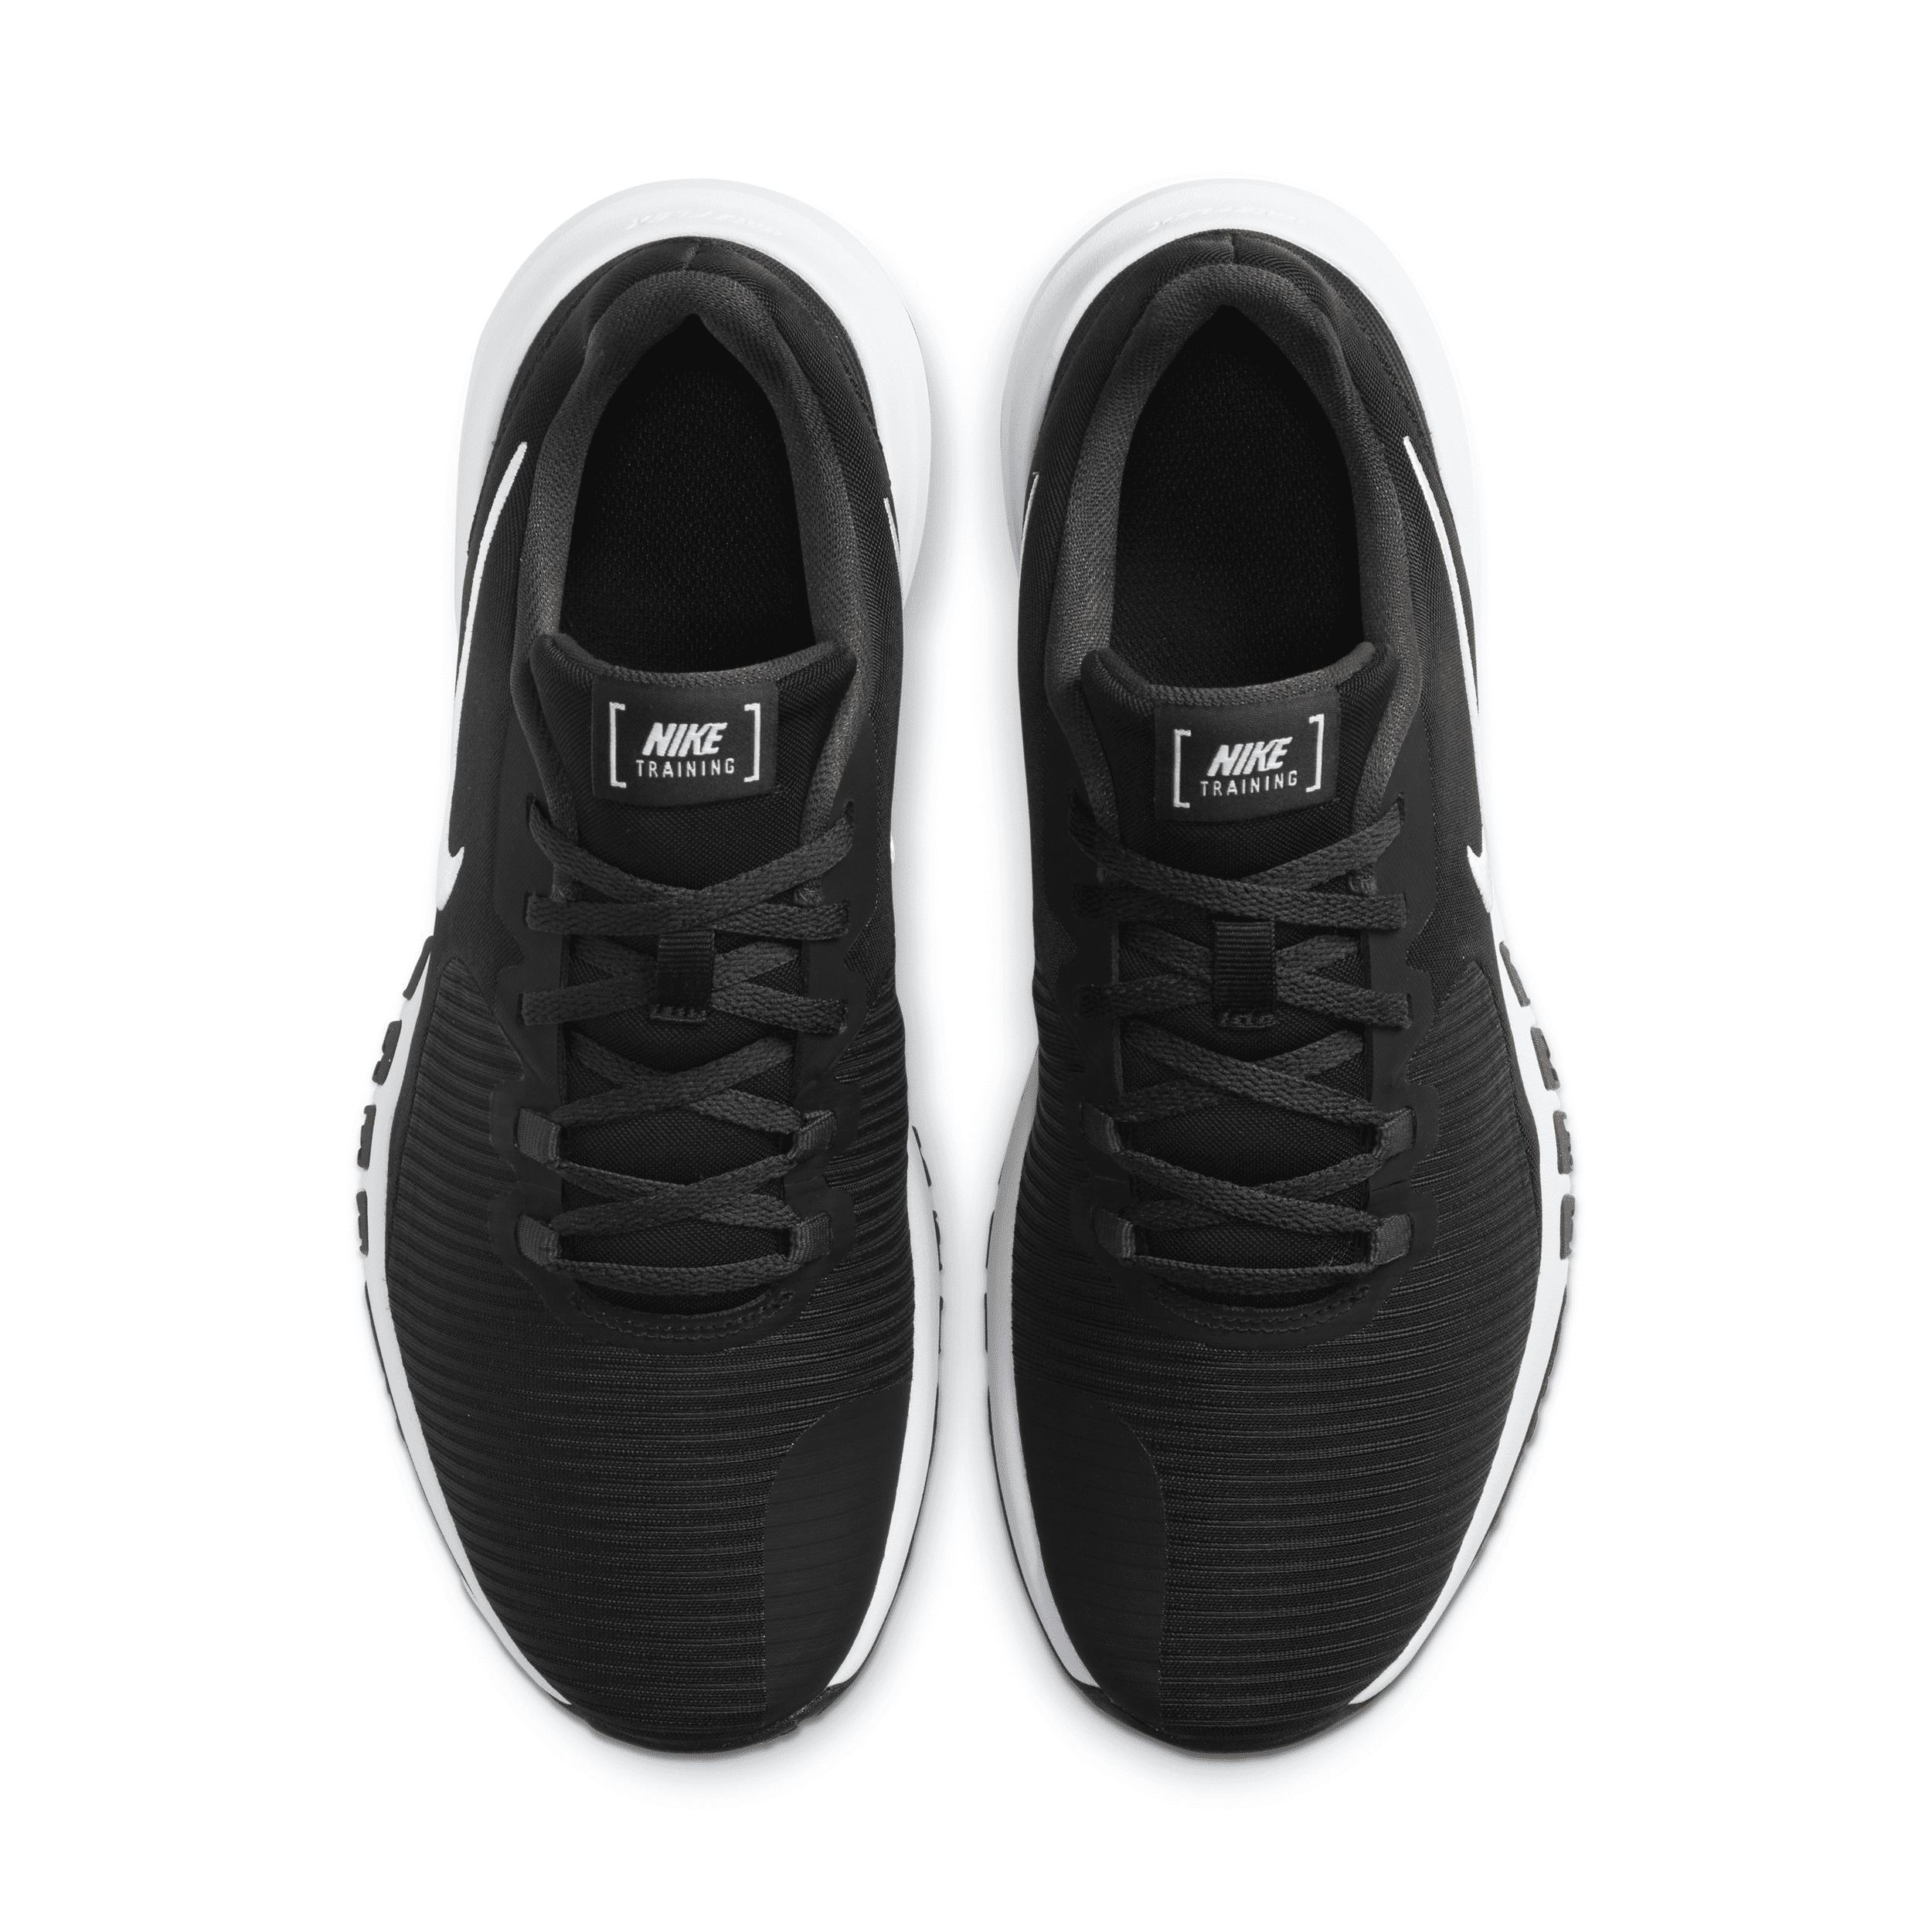 Nike Men's Flex Control 4 Workout Shoes Product Image